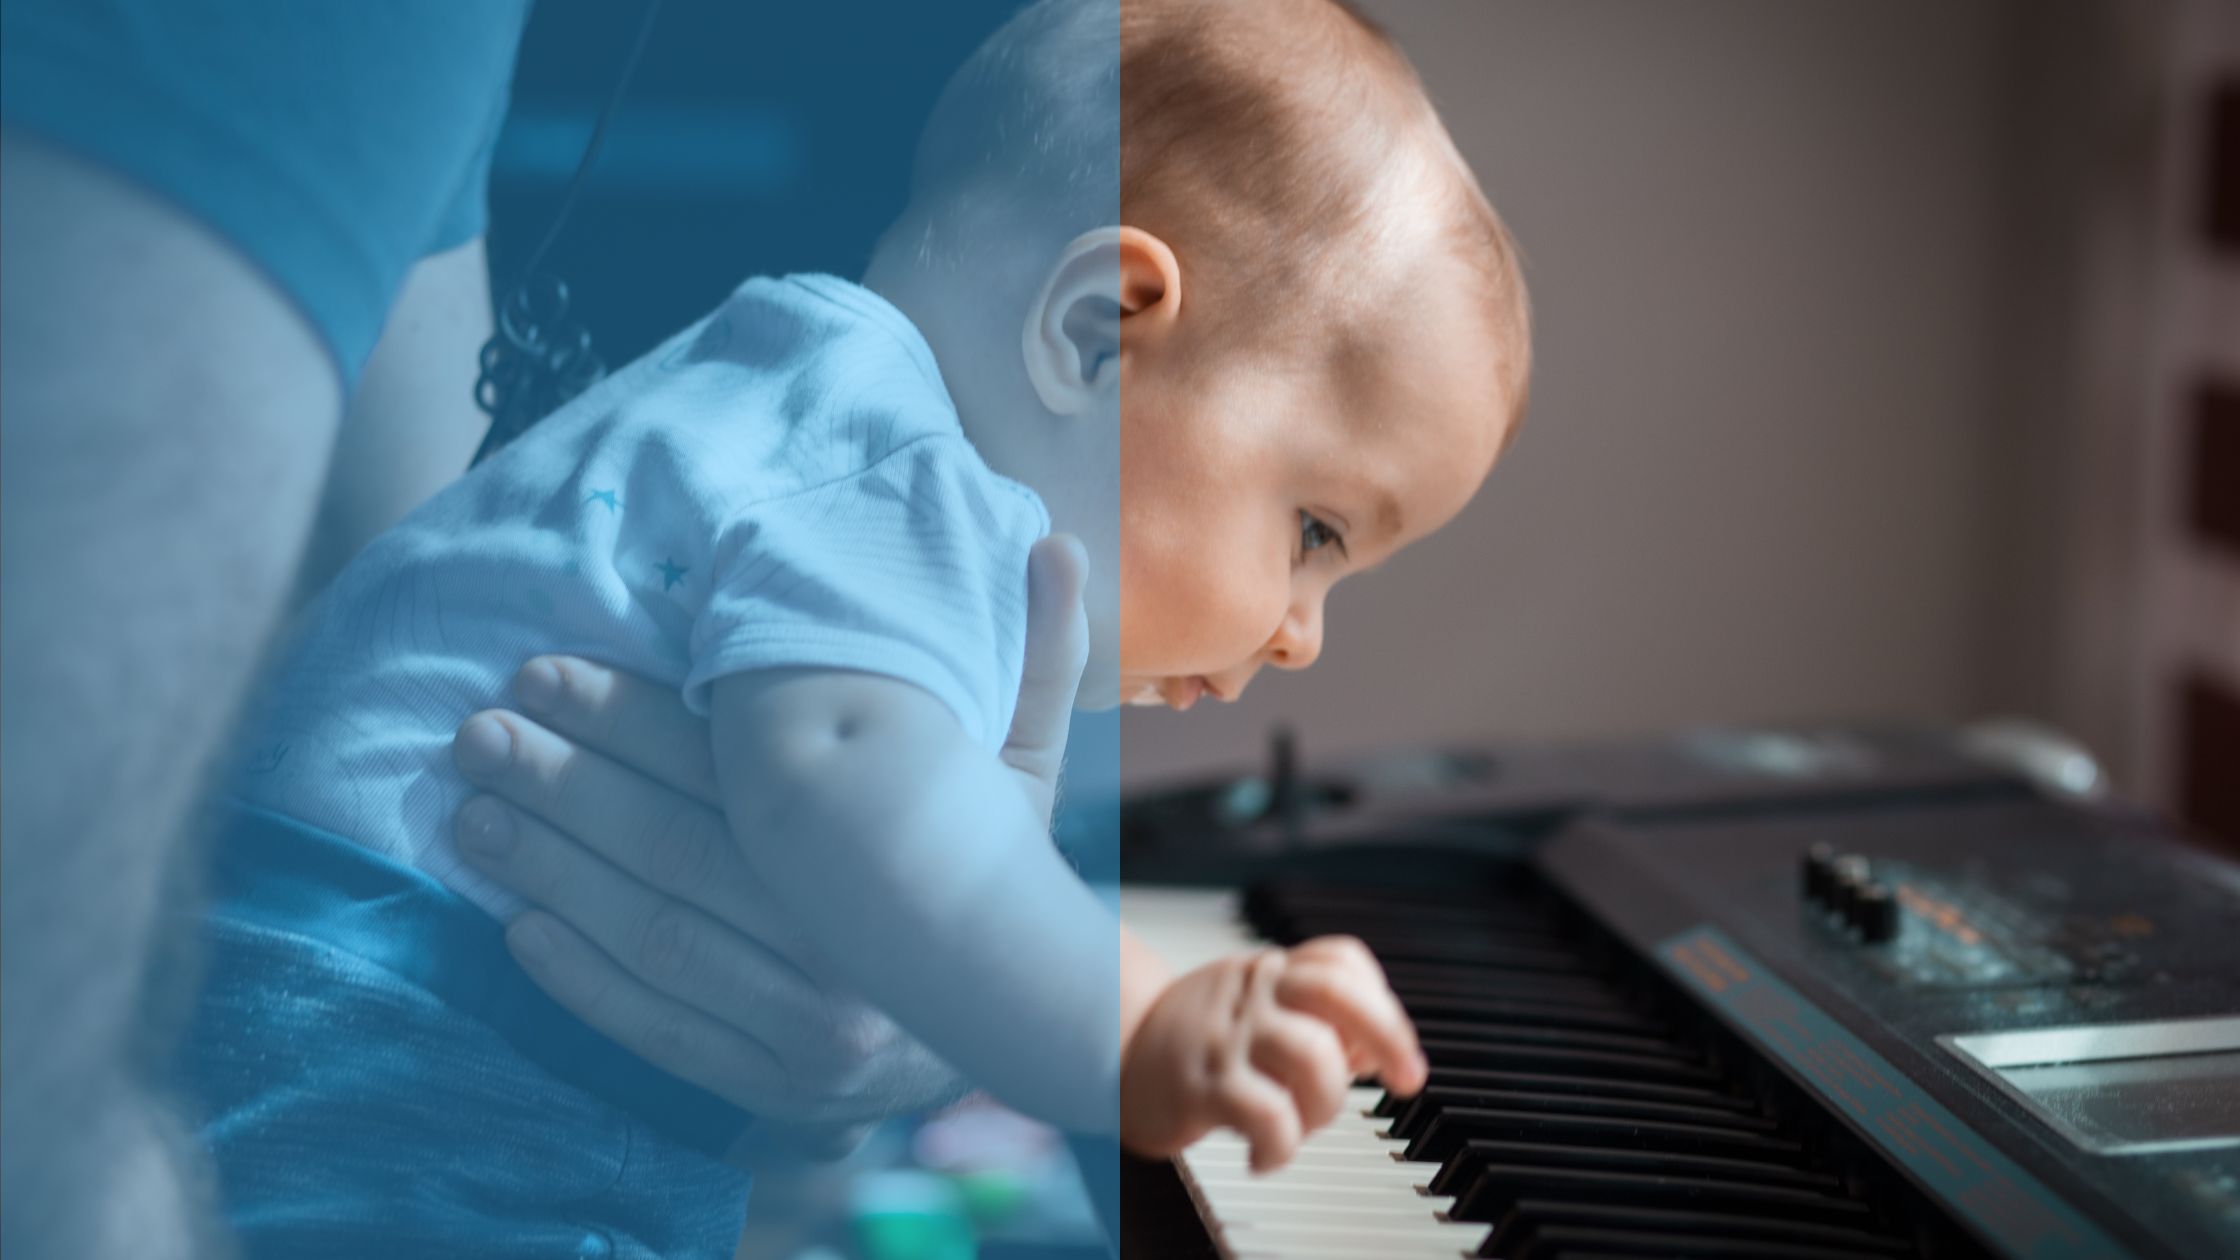 Singing & Music For Baby's Brain Development